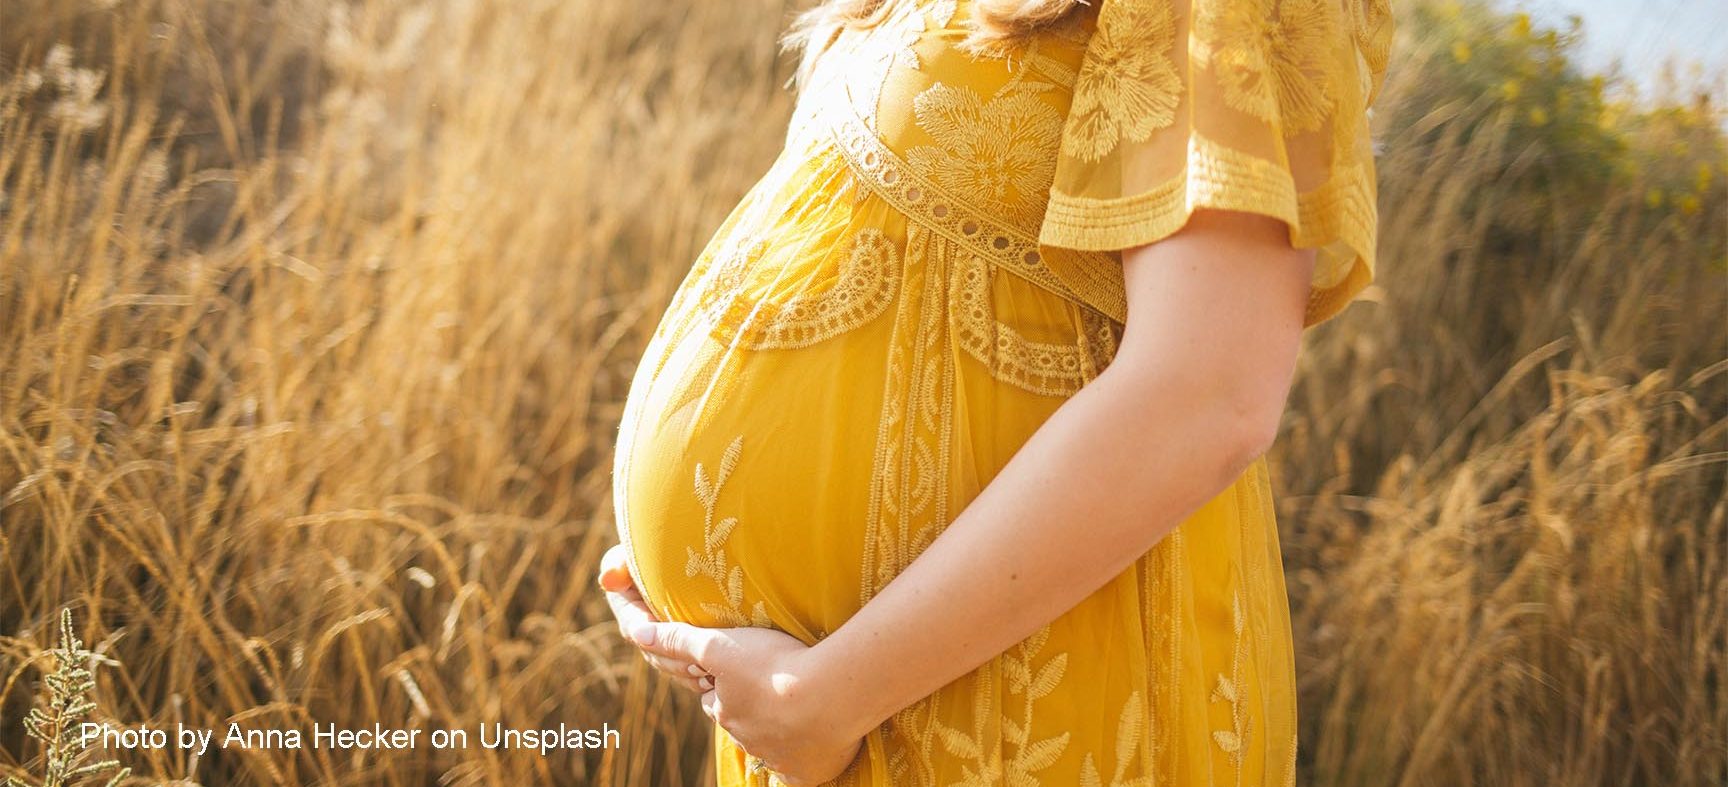 Perché non rimango incinta dopo il trasferimento dell'embrione?